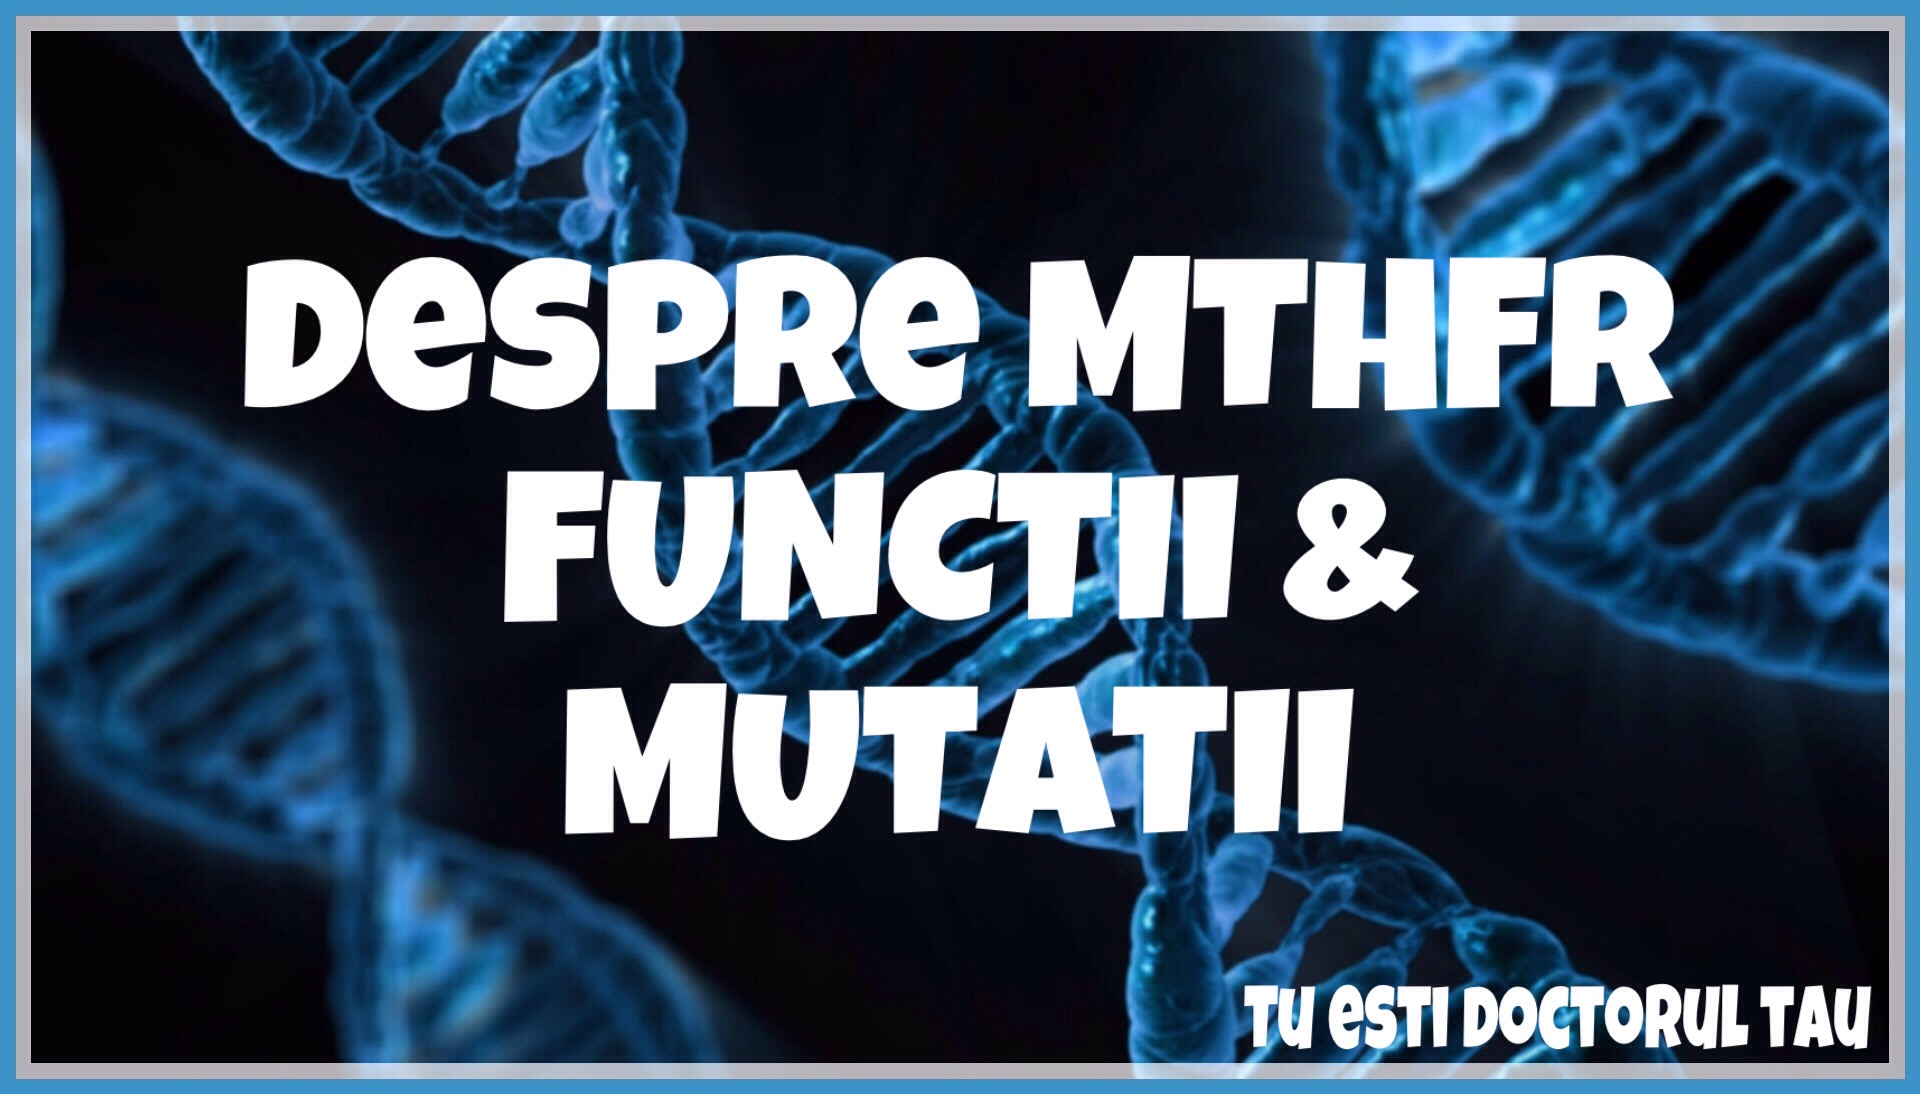 Despre MTHFR, functii & mutatii